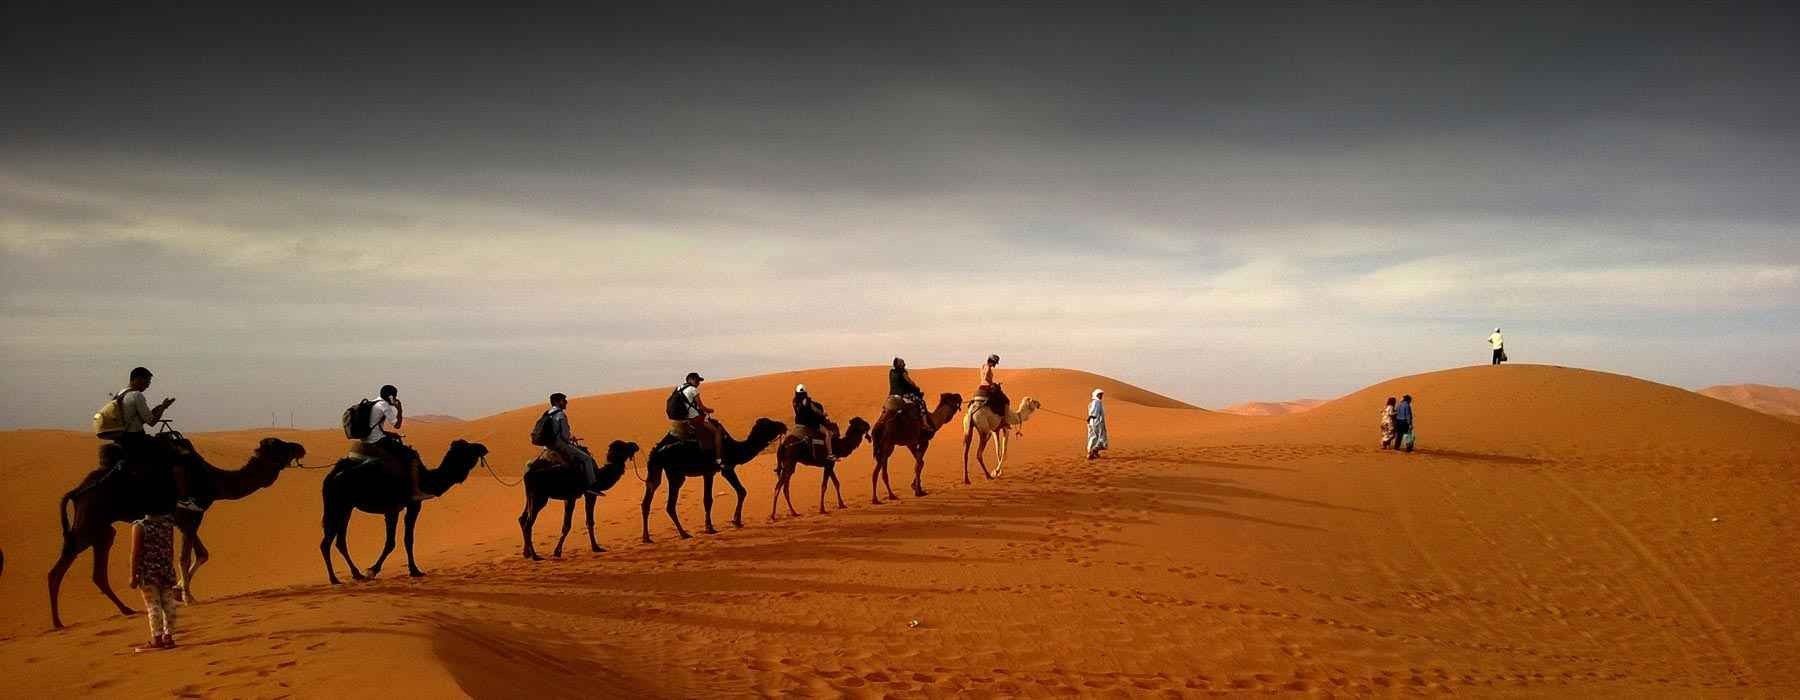 المسافرون العرب